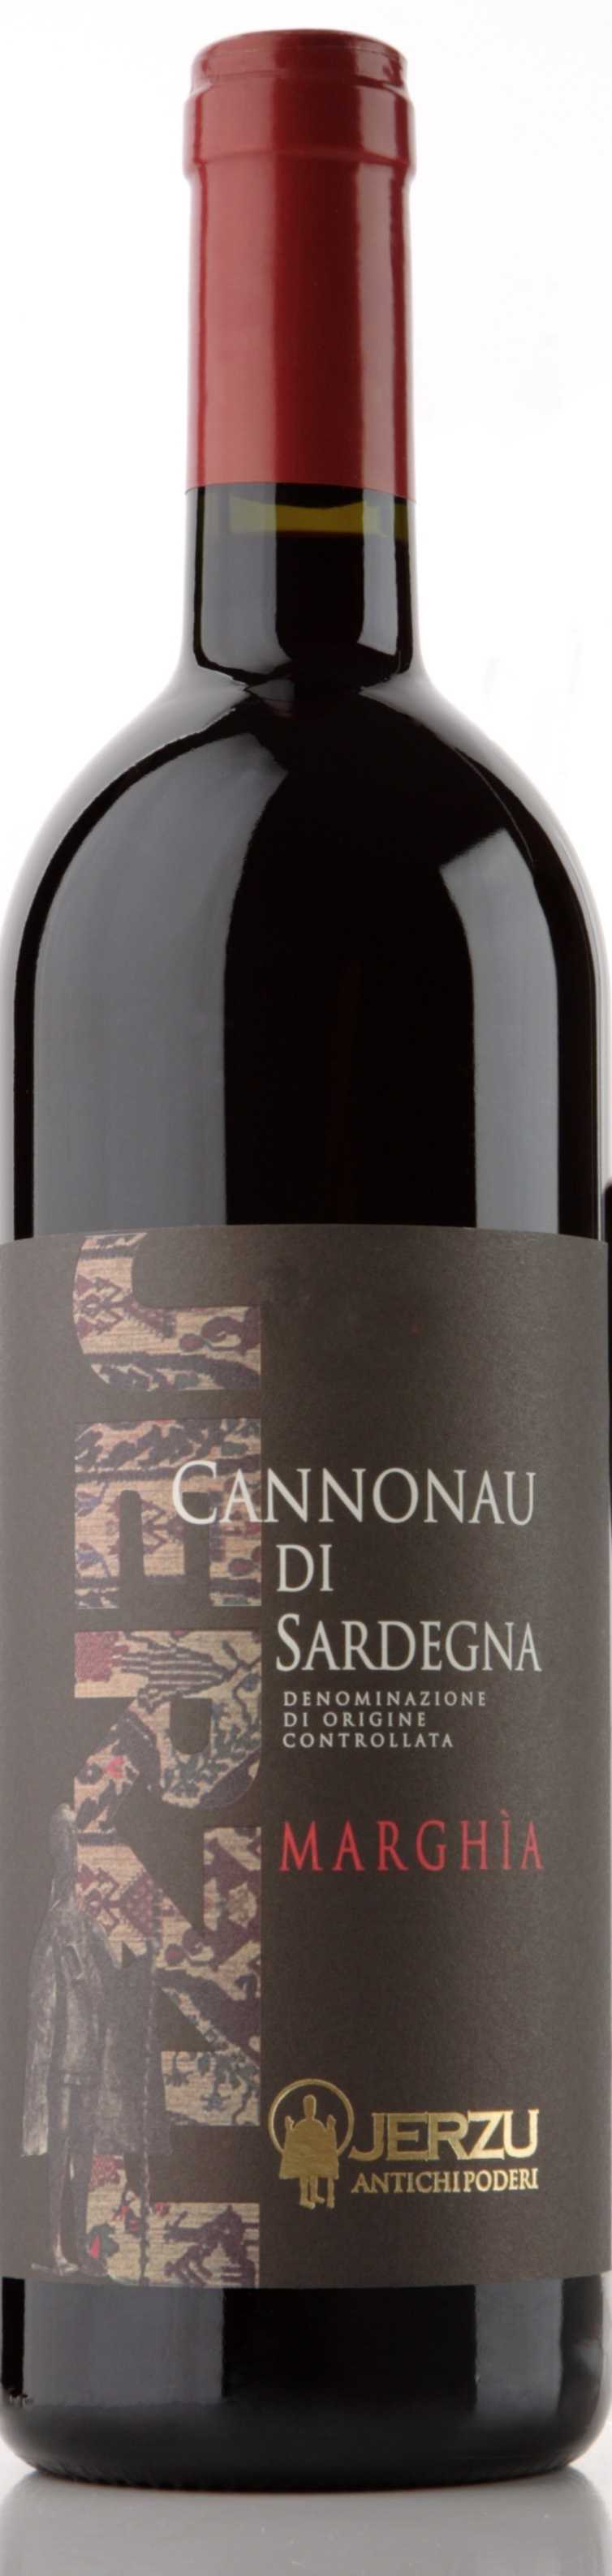 Jerzu - Cannonau di Sardegna DOC Marghia - 2019